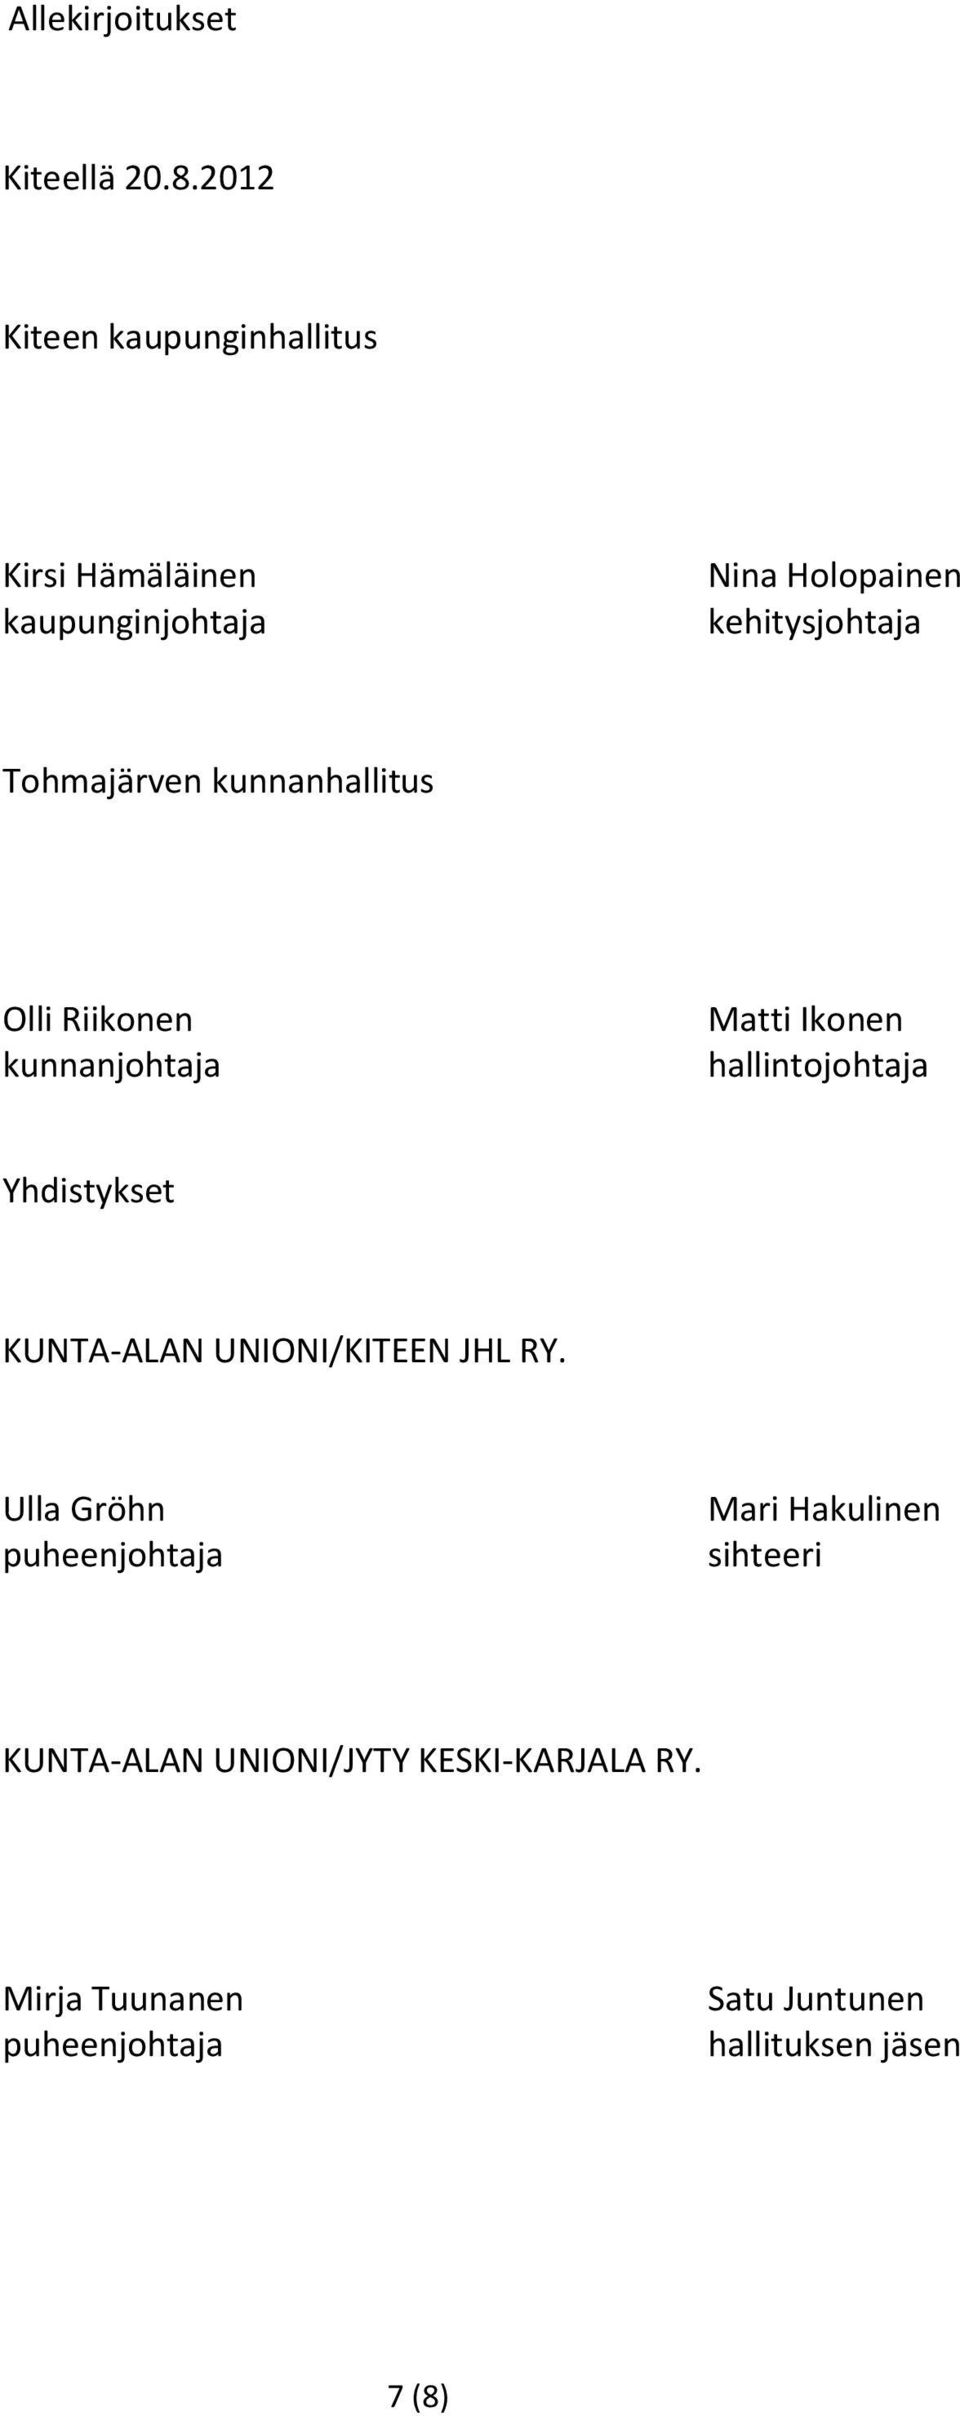 Tohmajärven kunnanhallitus Olli Riikonen kunnanjohtaja Matti Ikonen hallintojohtaja Yhdistykset